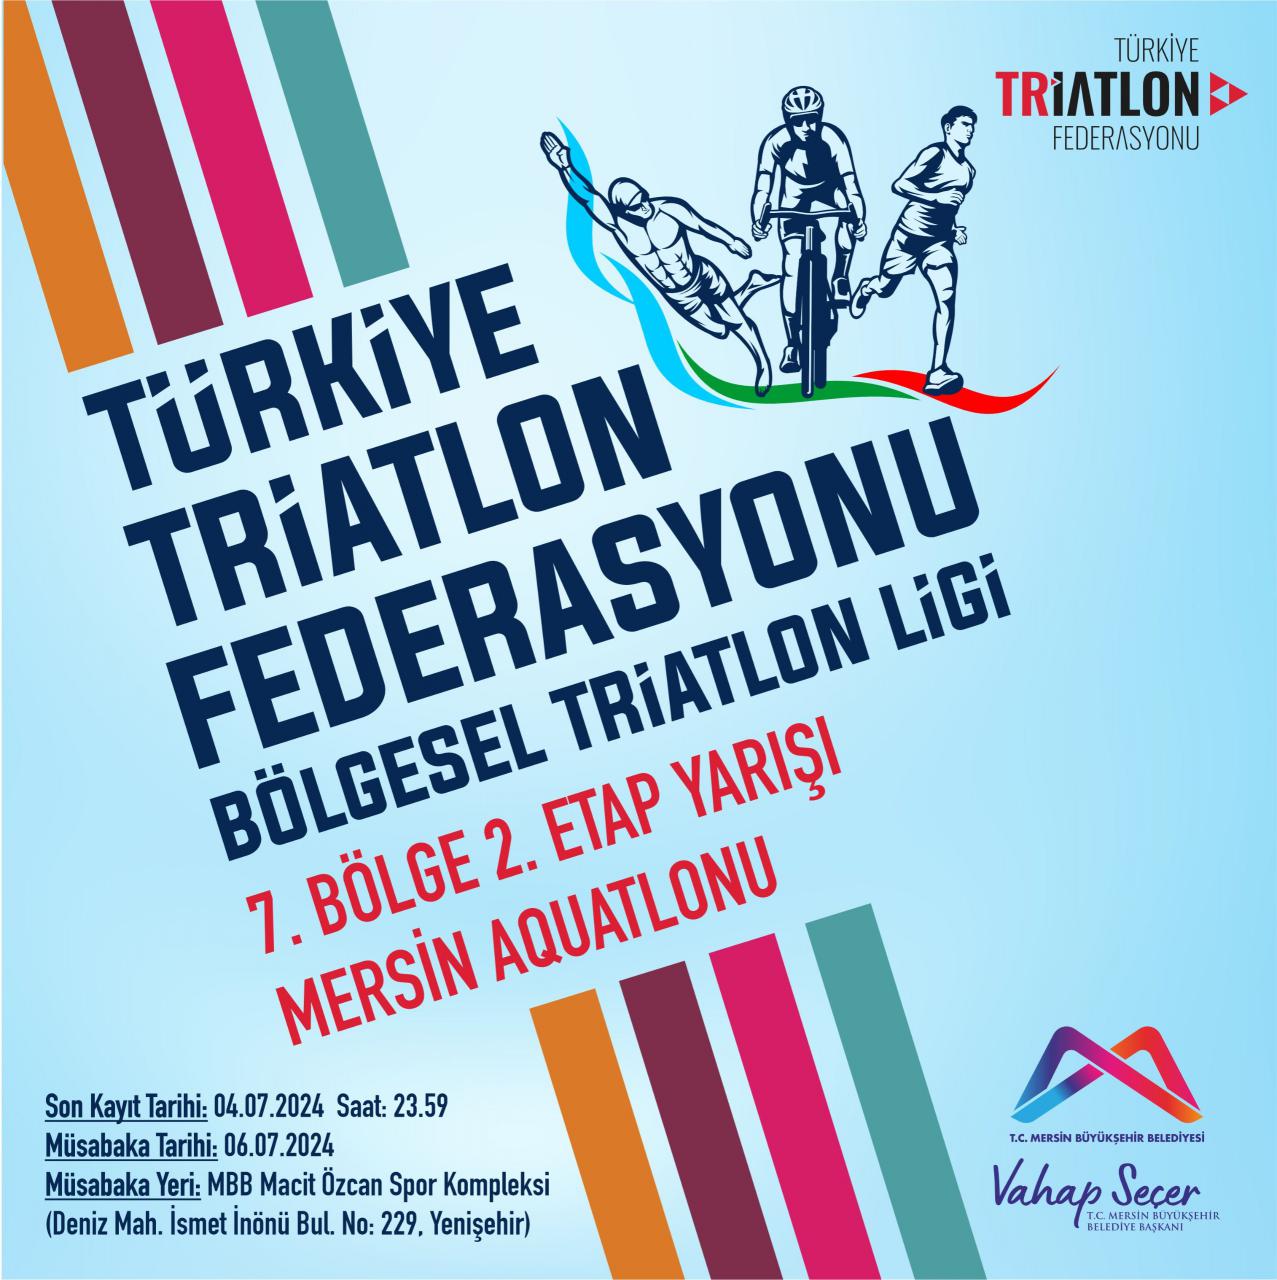 Türkiye Triatlon Federasyonu Bölgesel Triatlon Ligi  7. Bölge 2. Etap Yarışı Mersin Aquatlonu